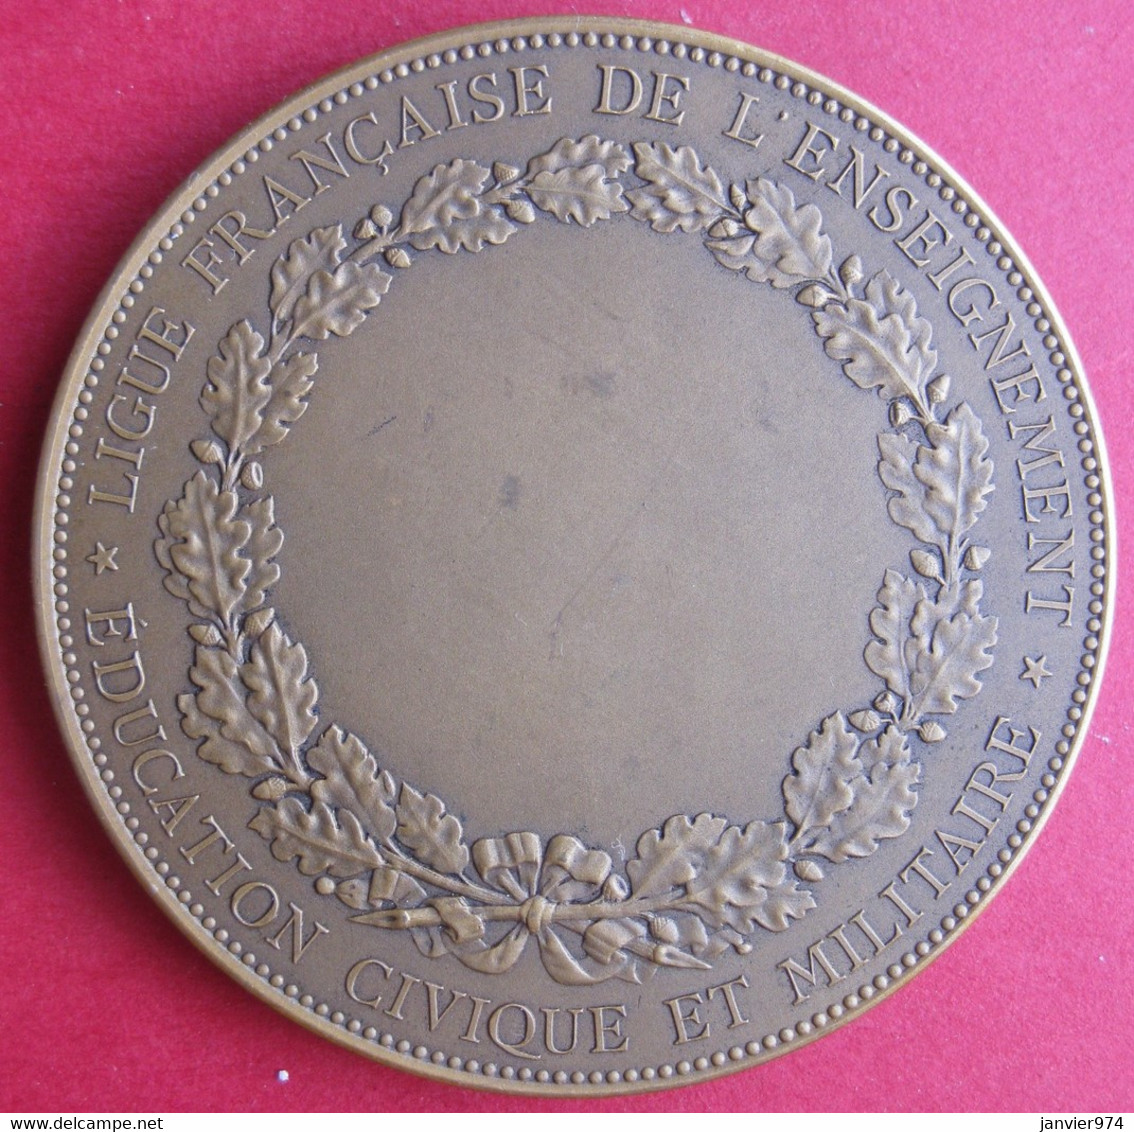 Médaille Ligue Française De L'Enseignement, Education Civique Et Militaire 1966 1881, Par Borrel En 1884 - Professionnels / De Société